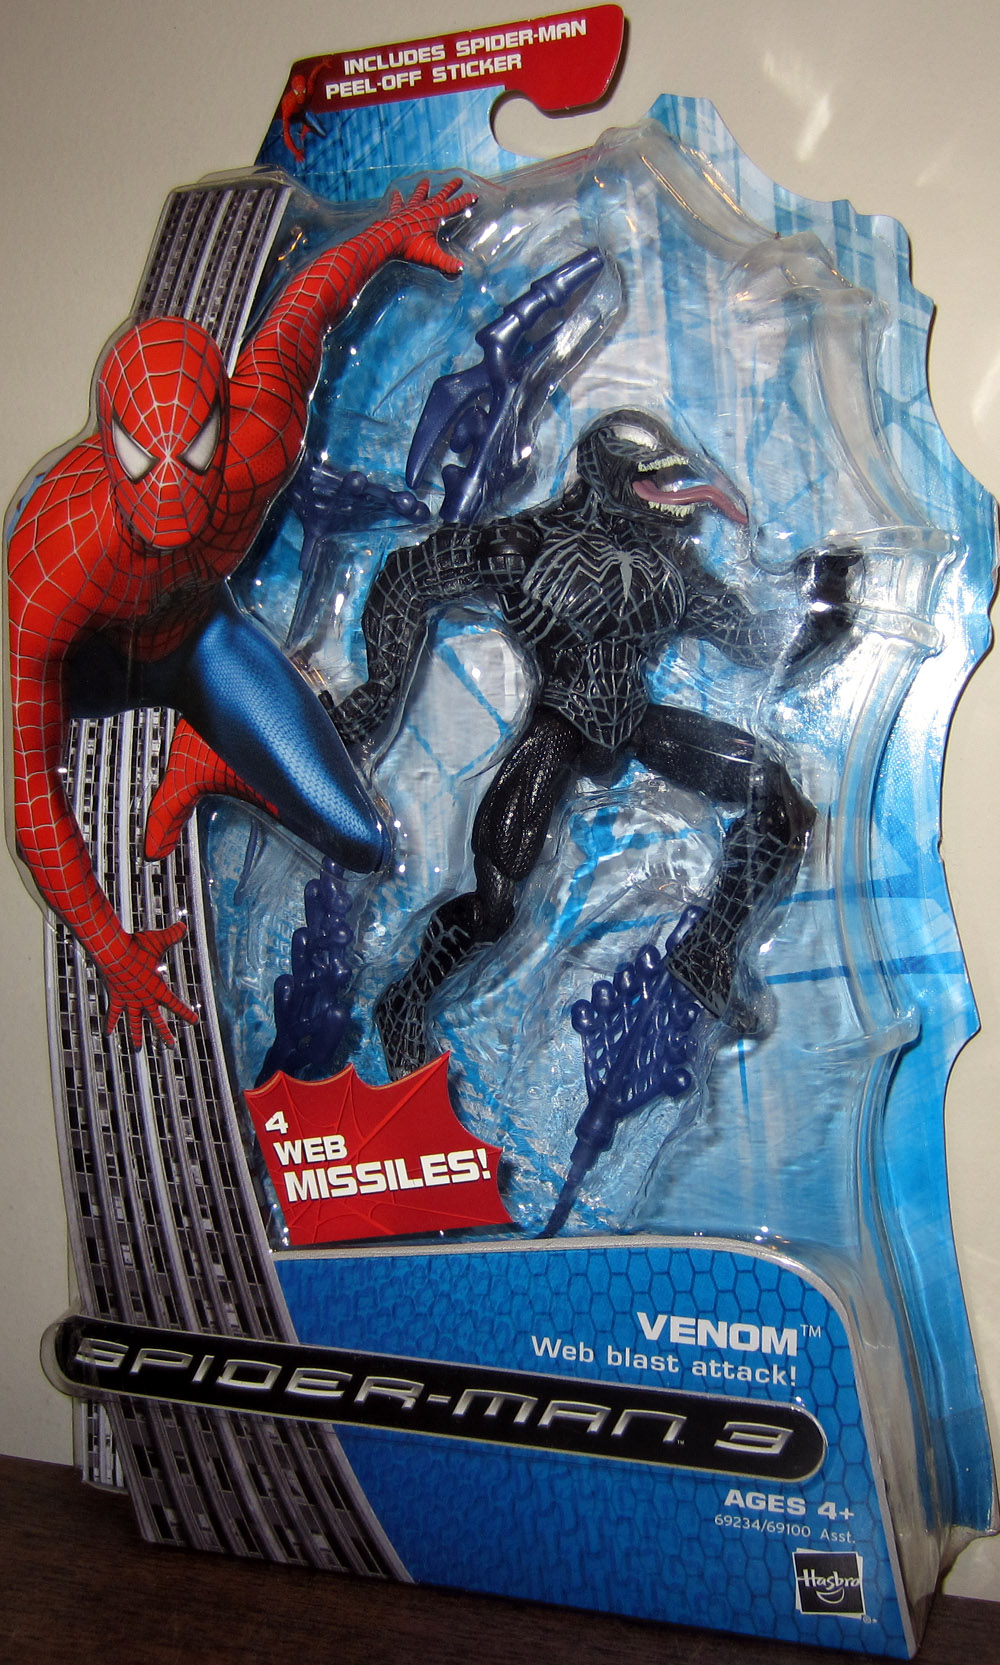 Web Blast Attack Spider-Man 3 action figure